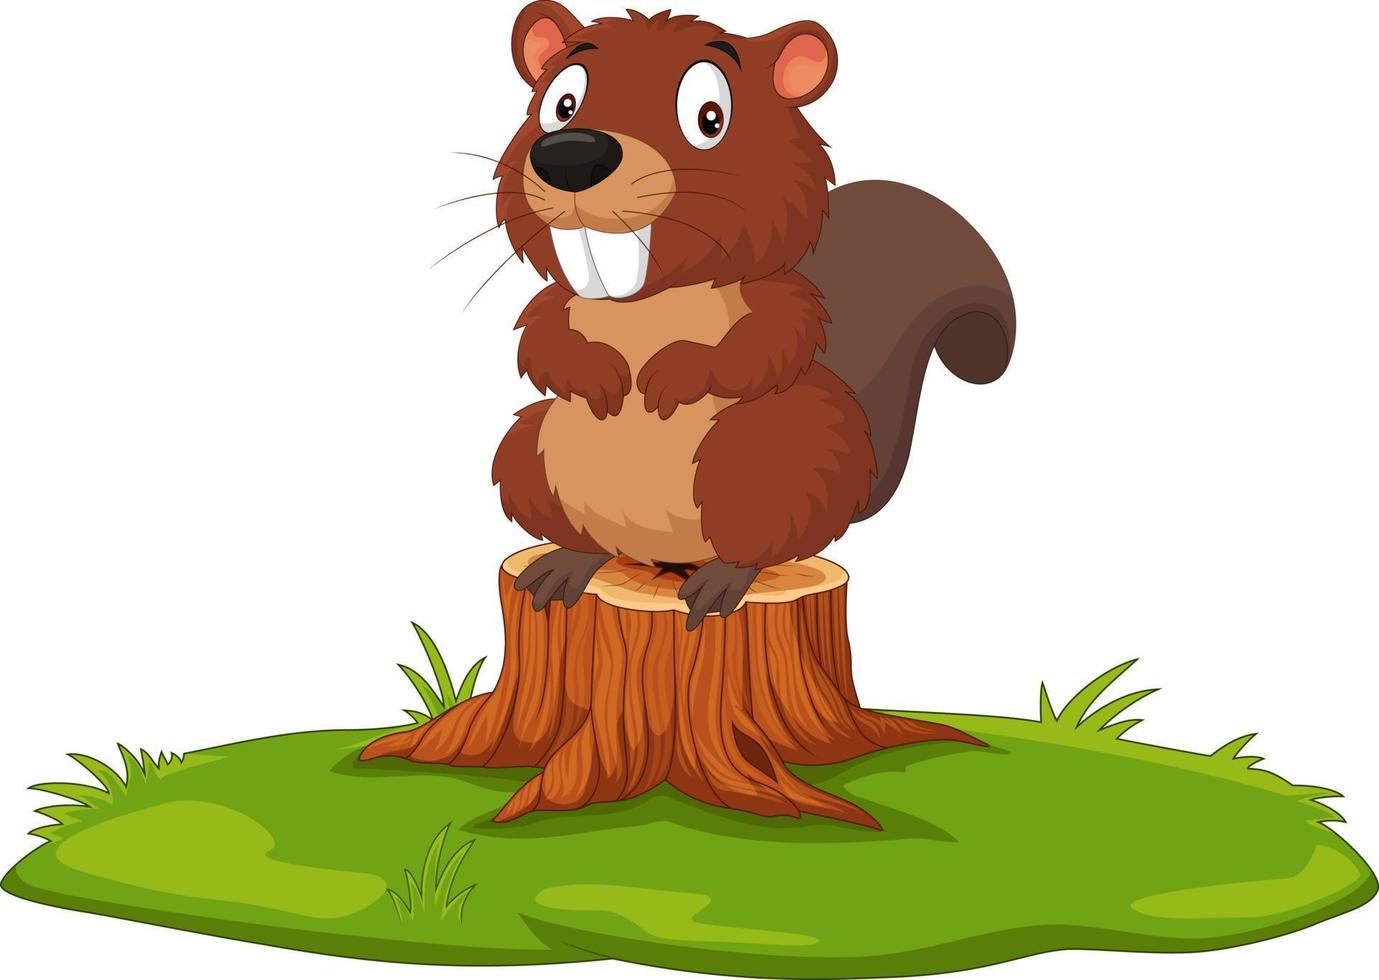 Cartoon beaver on tree stump vector